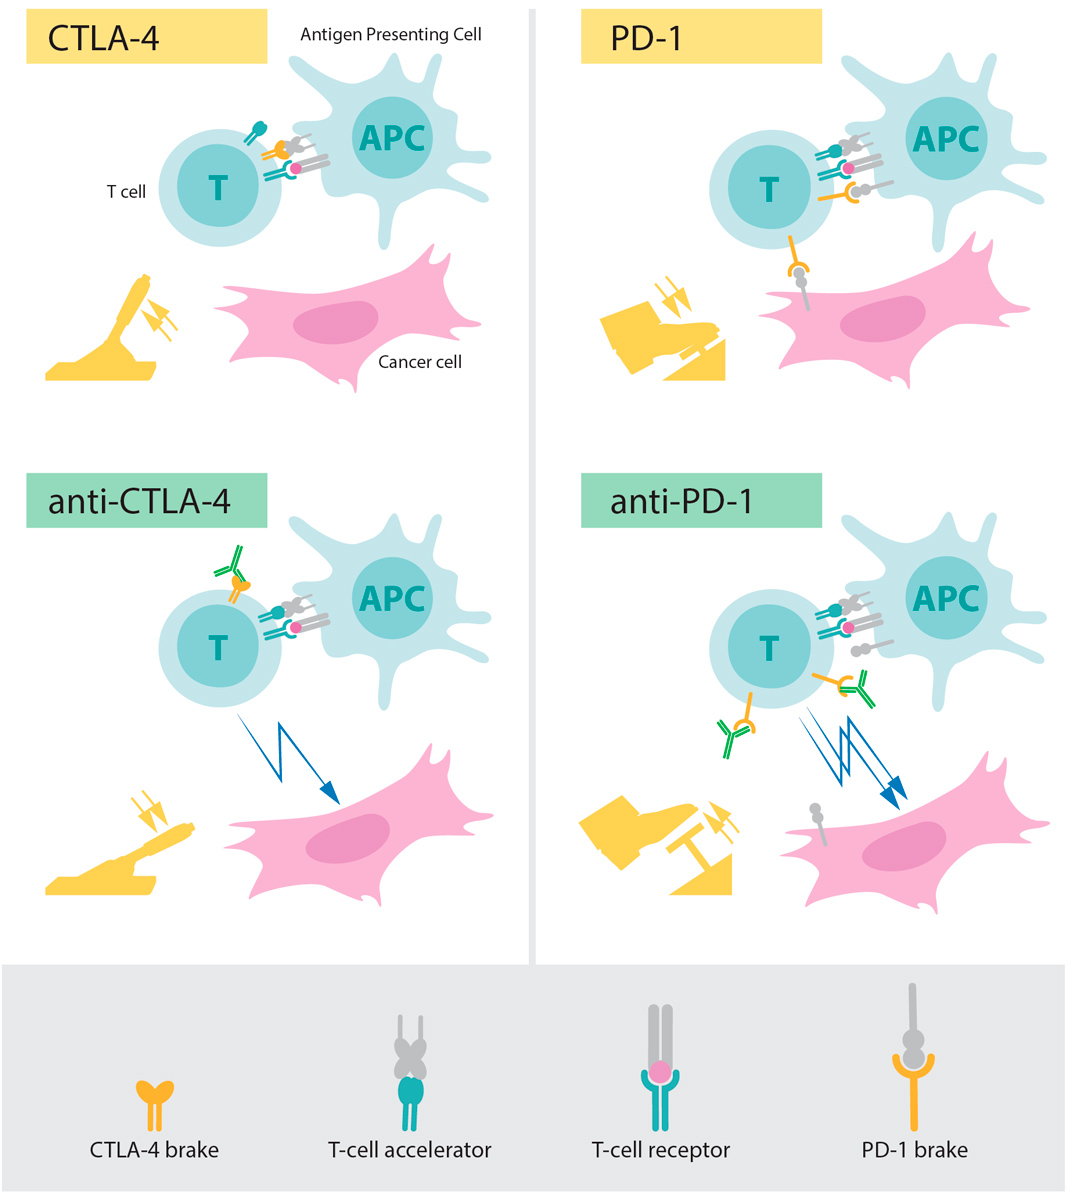 Figura: Superior esquerdo: A ativação de células T requer que o recetor de células T se ligue a estruturas de outras células imunológicas reconhecidas como “não-próprias”. Uma proteína que funciona como um acelerador de células T também é necessária para a ativar as células T. O CTLA-4 funciona como um travão nas células T que inibe a função do acelerador. Parte inferior esquerda: Os anticorpos (verde) contra CTLA-4 bloqueiam a função do travão, levando à ativação de células T que atacam as células cancerígenas.